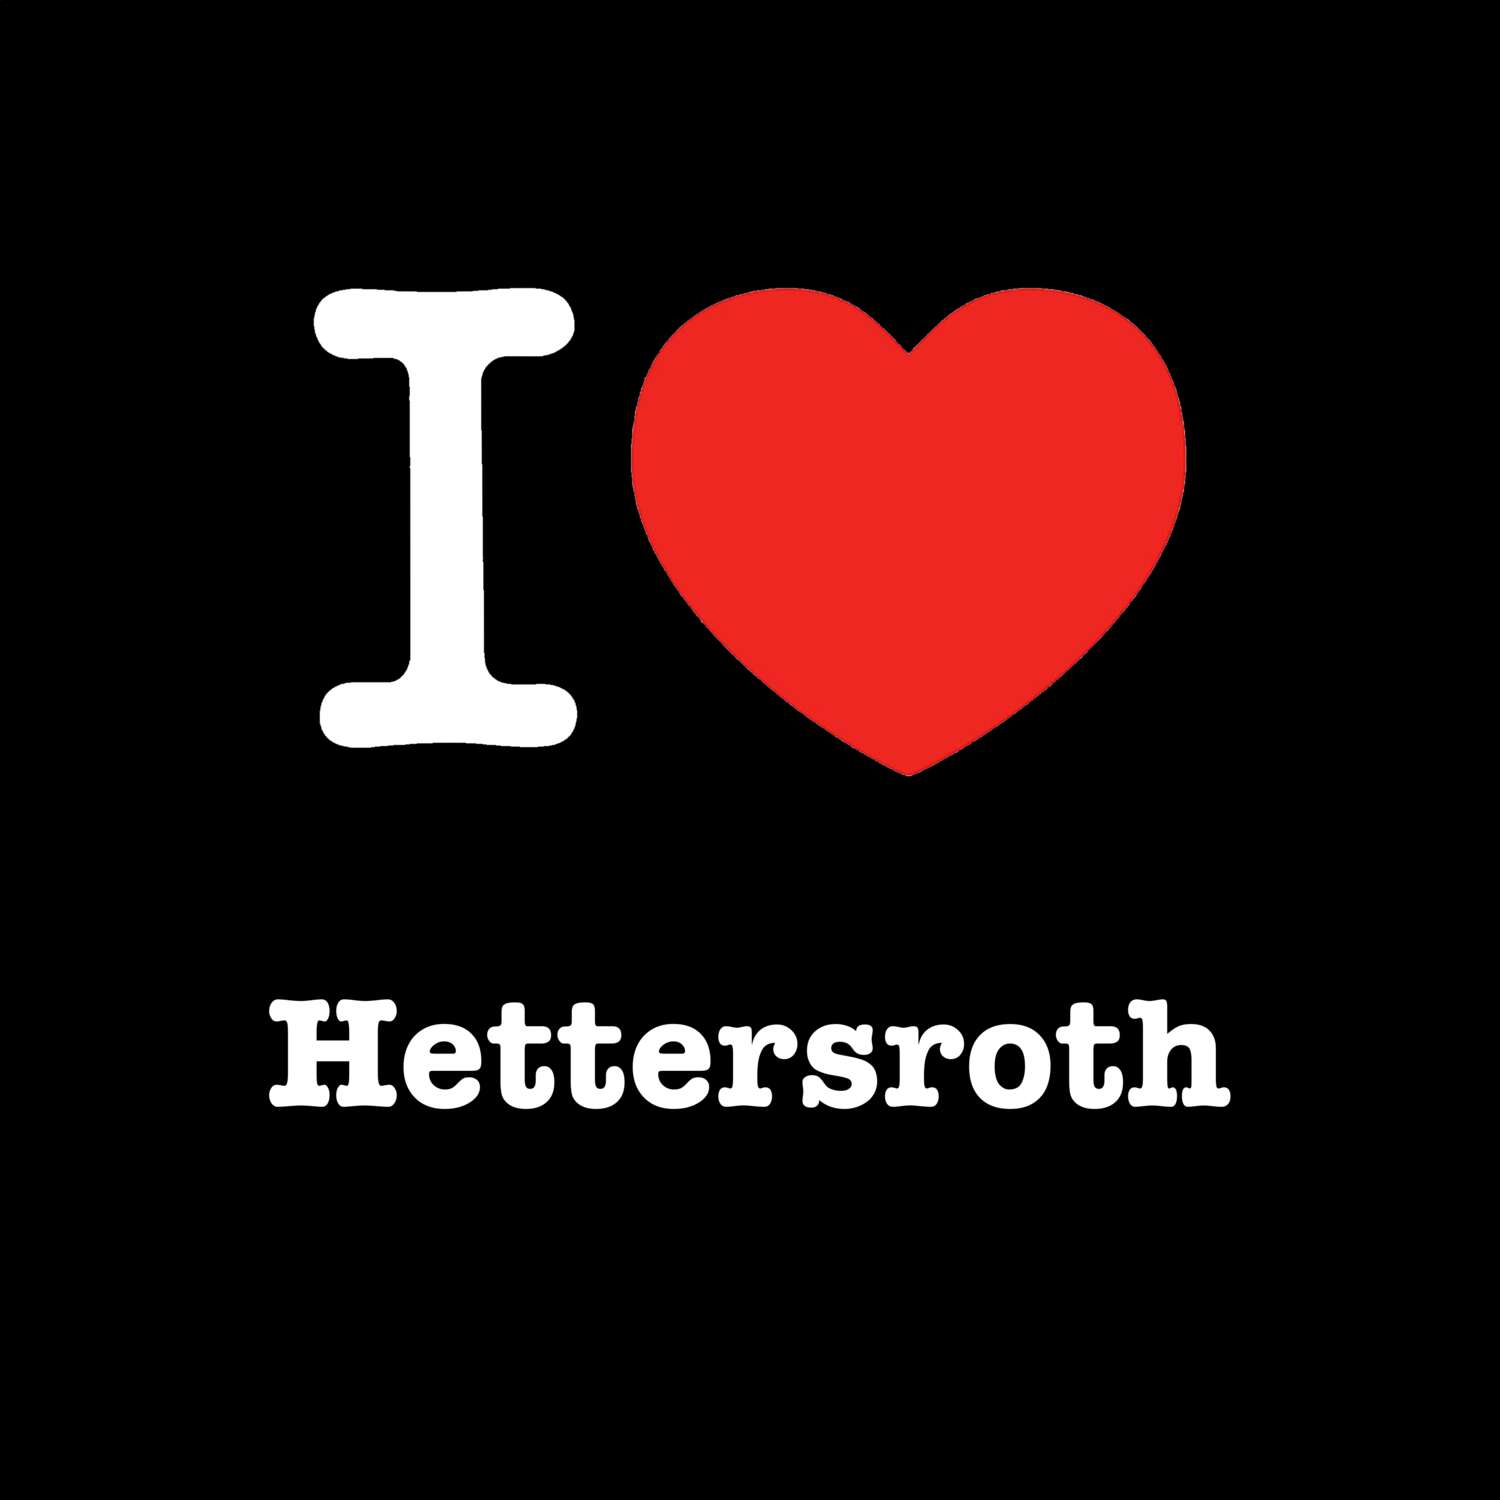 Hettersroth T-Shirt »I love«